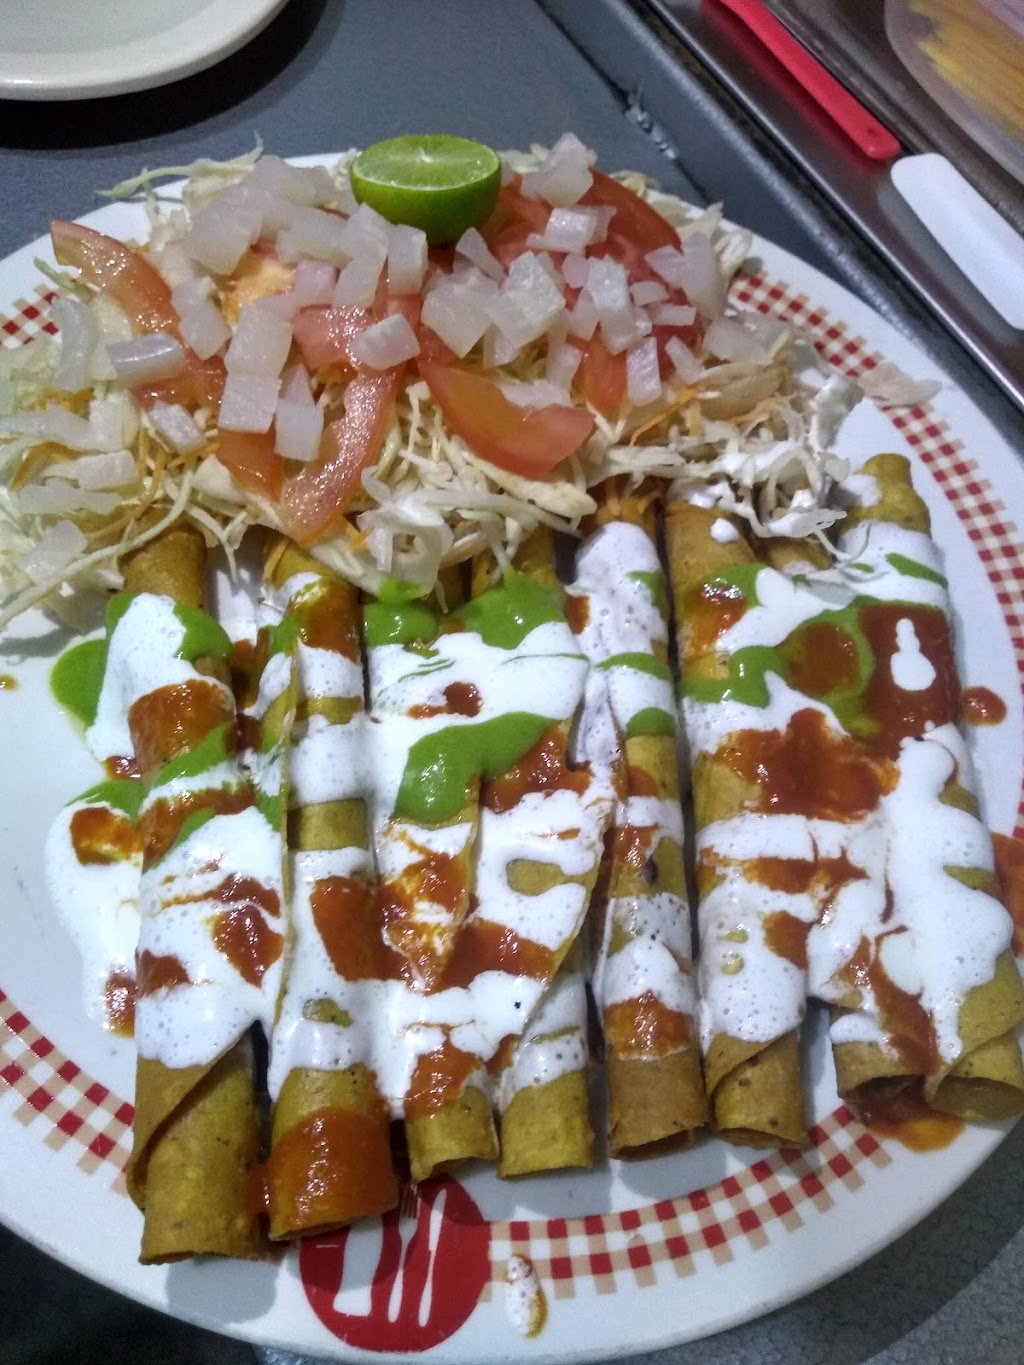 Burritos y Gorditas LA ESCONDIDA | Hoja de Aguacate 2831, 32575 Cd Juárez, Chih., Mexico | Phone: 656 634 7246